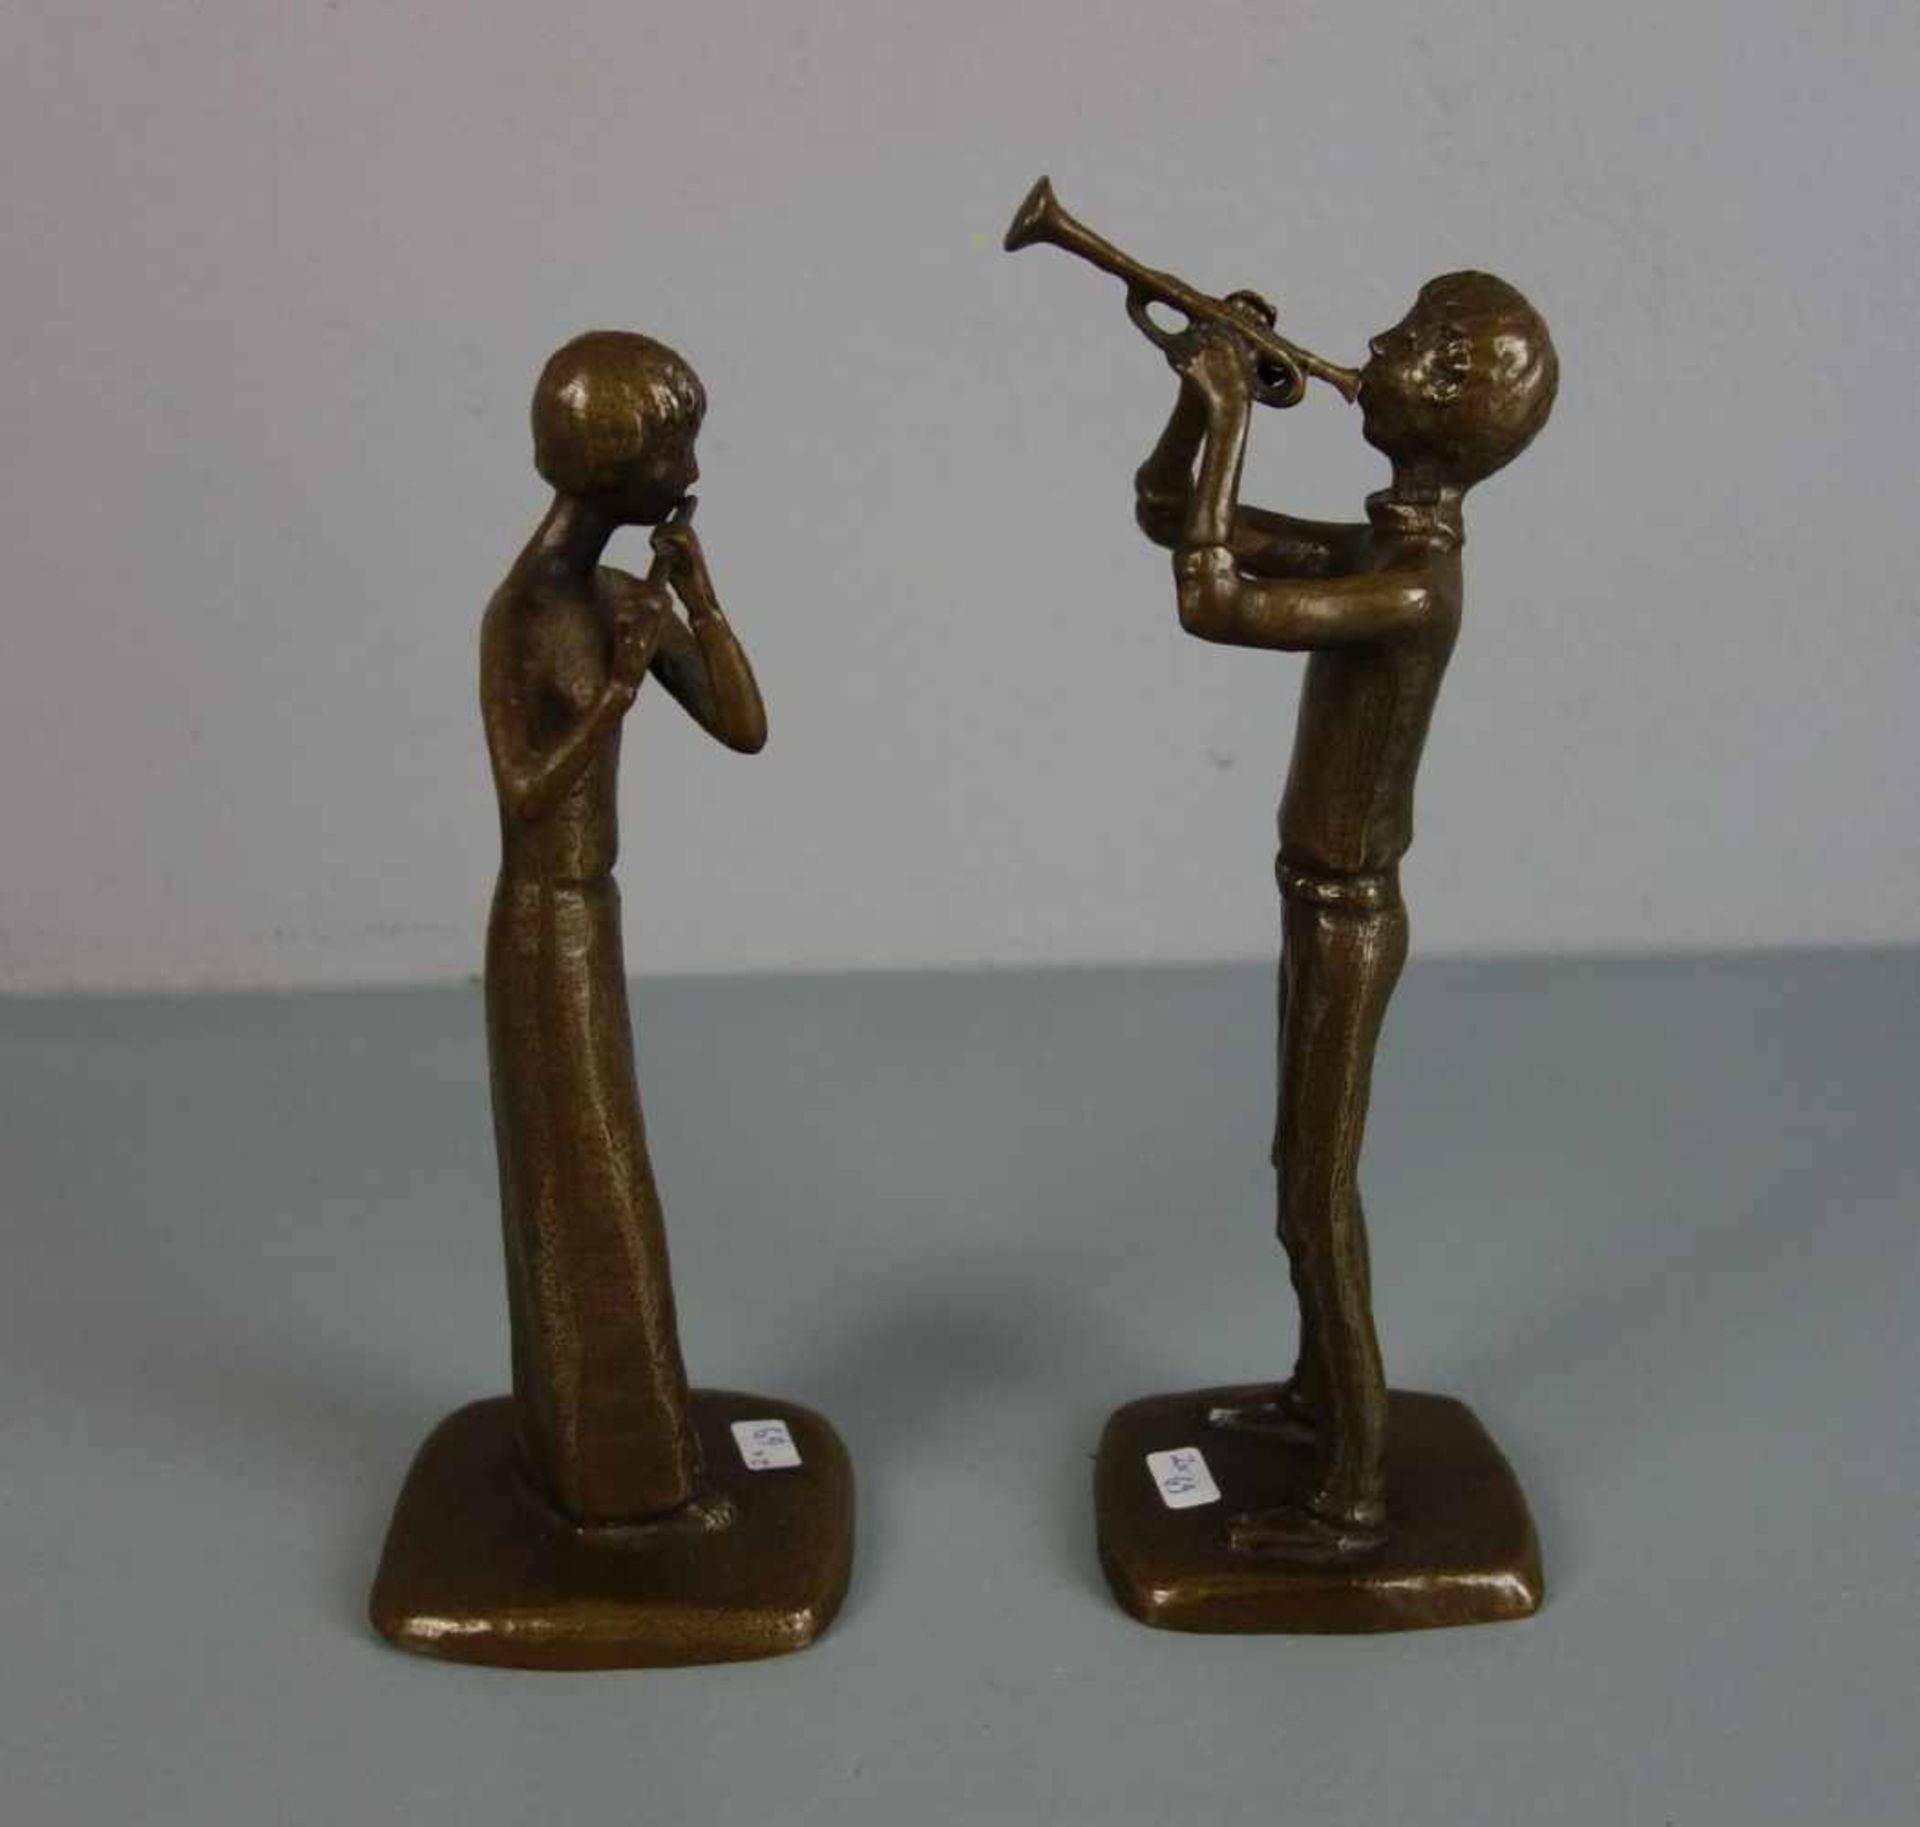 ANONYMER BILDHAUER (20. / 21. JH.), Paar Bronze - Skulpturen: "Trompeter" und "Flötistin" / two - Image 2 of 4